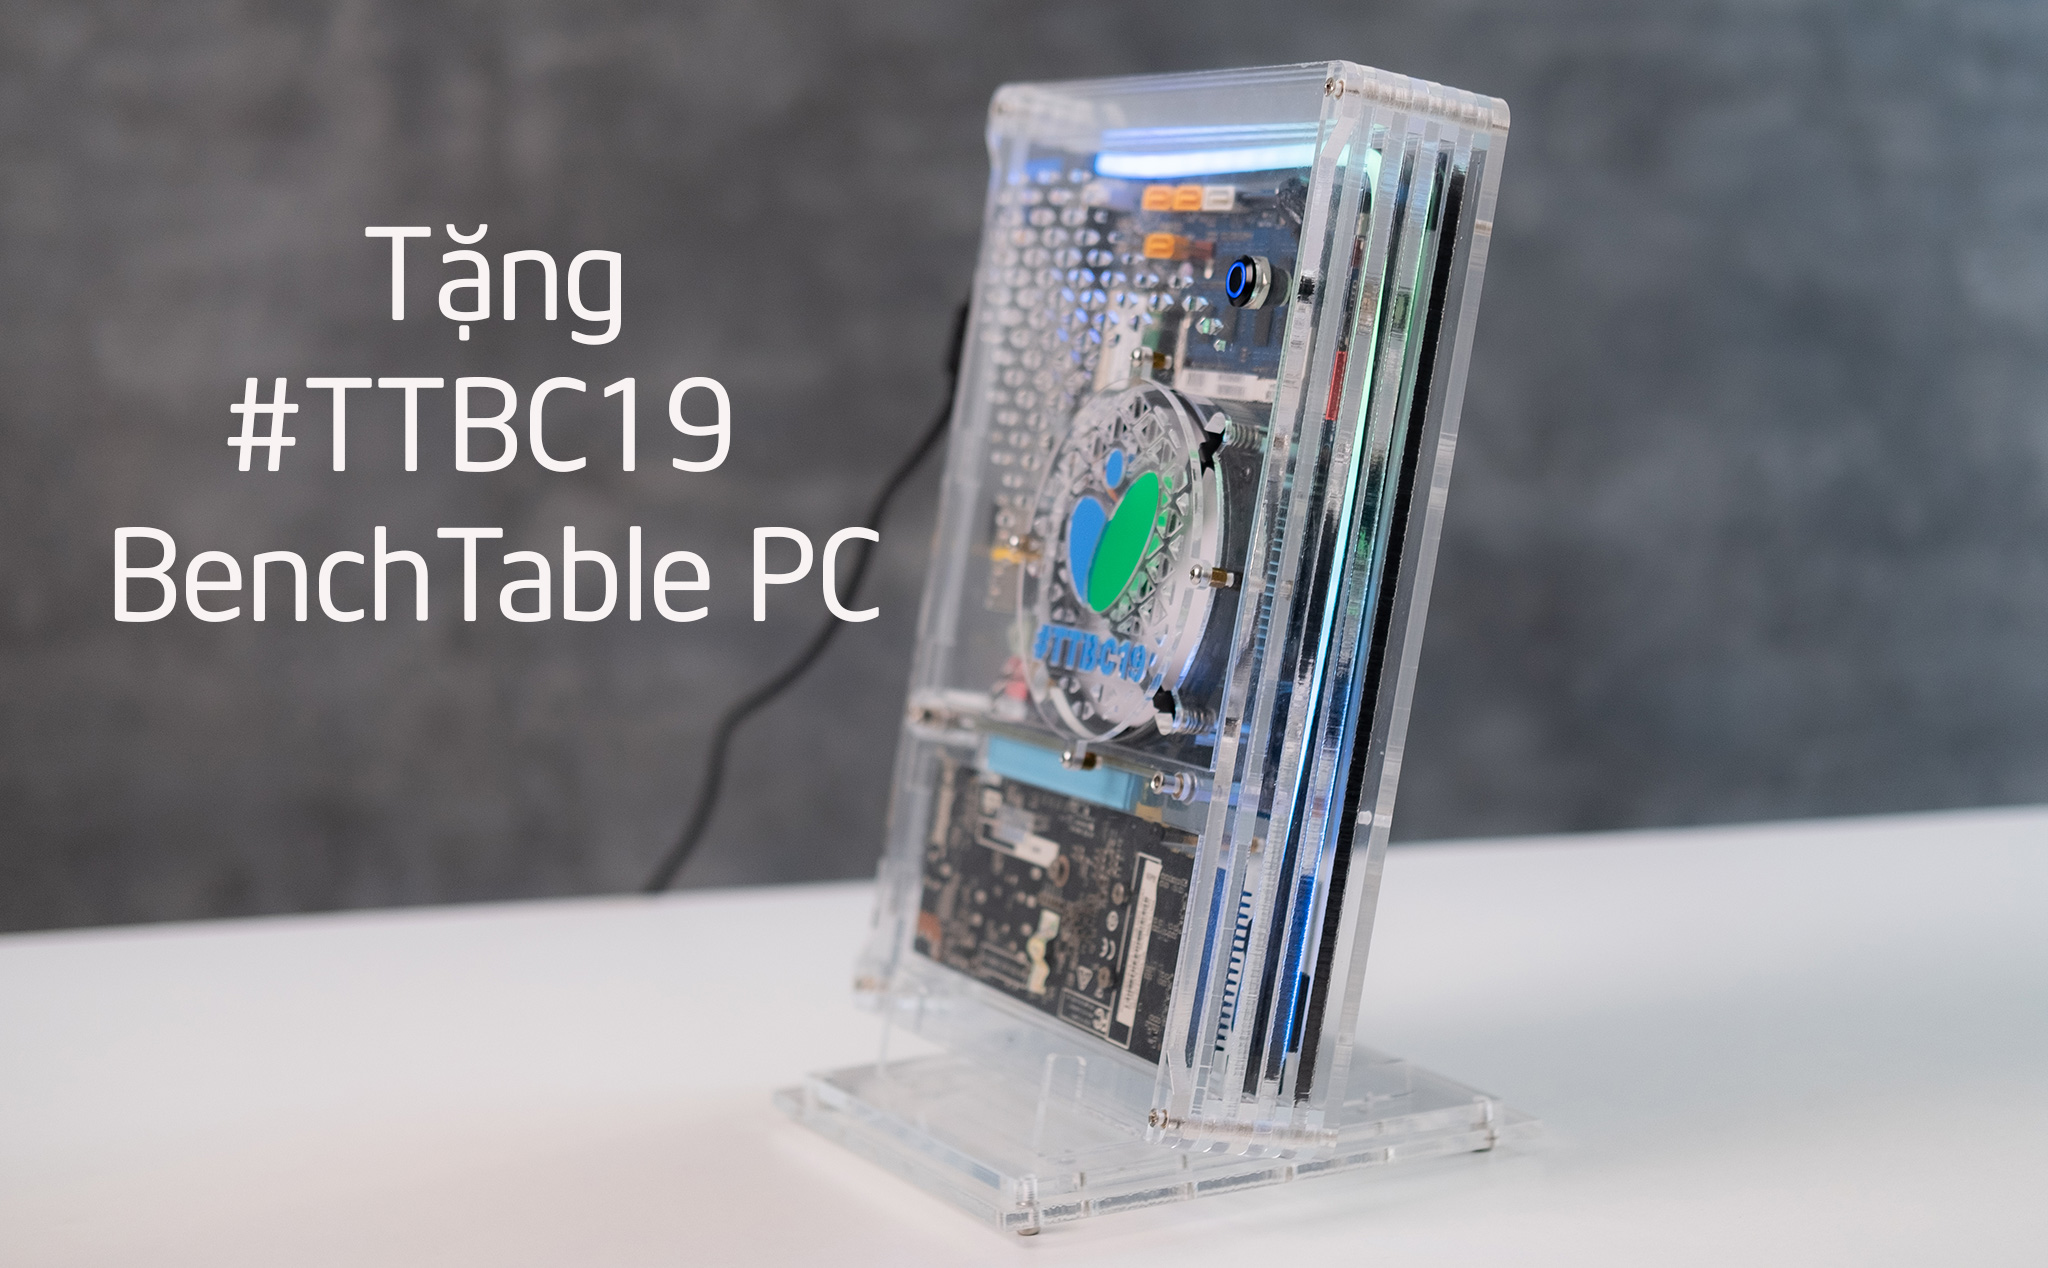 Trên tay và tặng #TTBC19 BenchTable PC